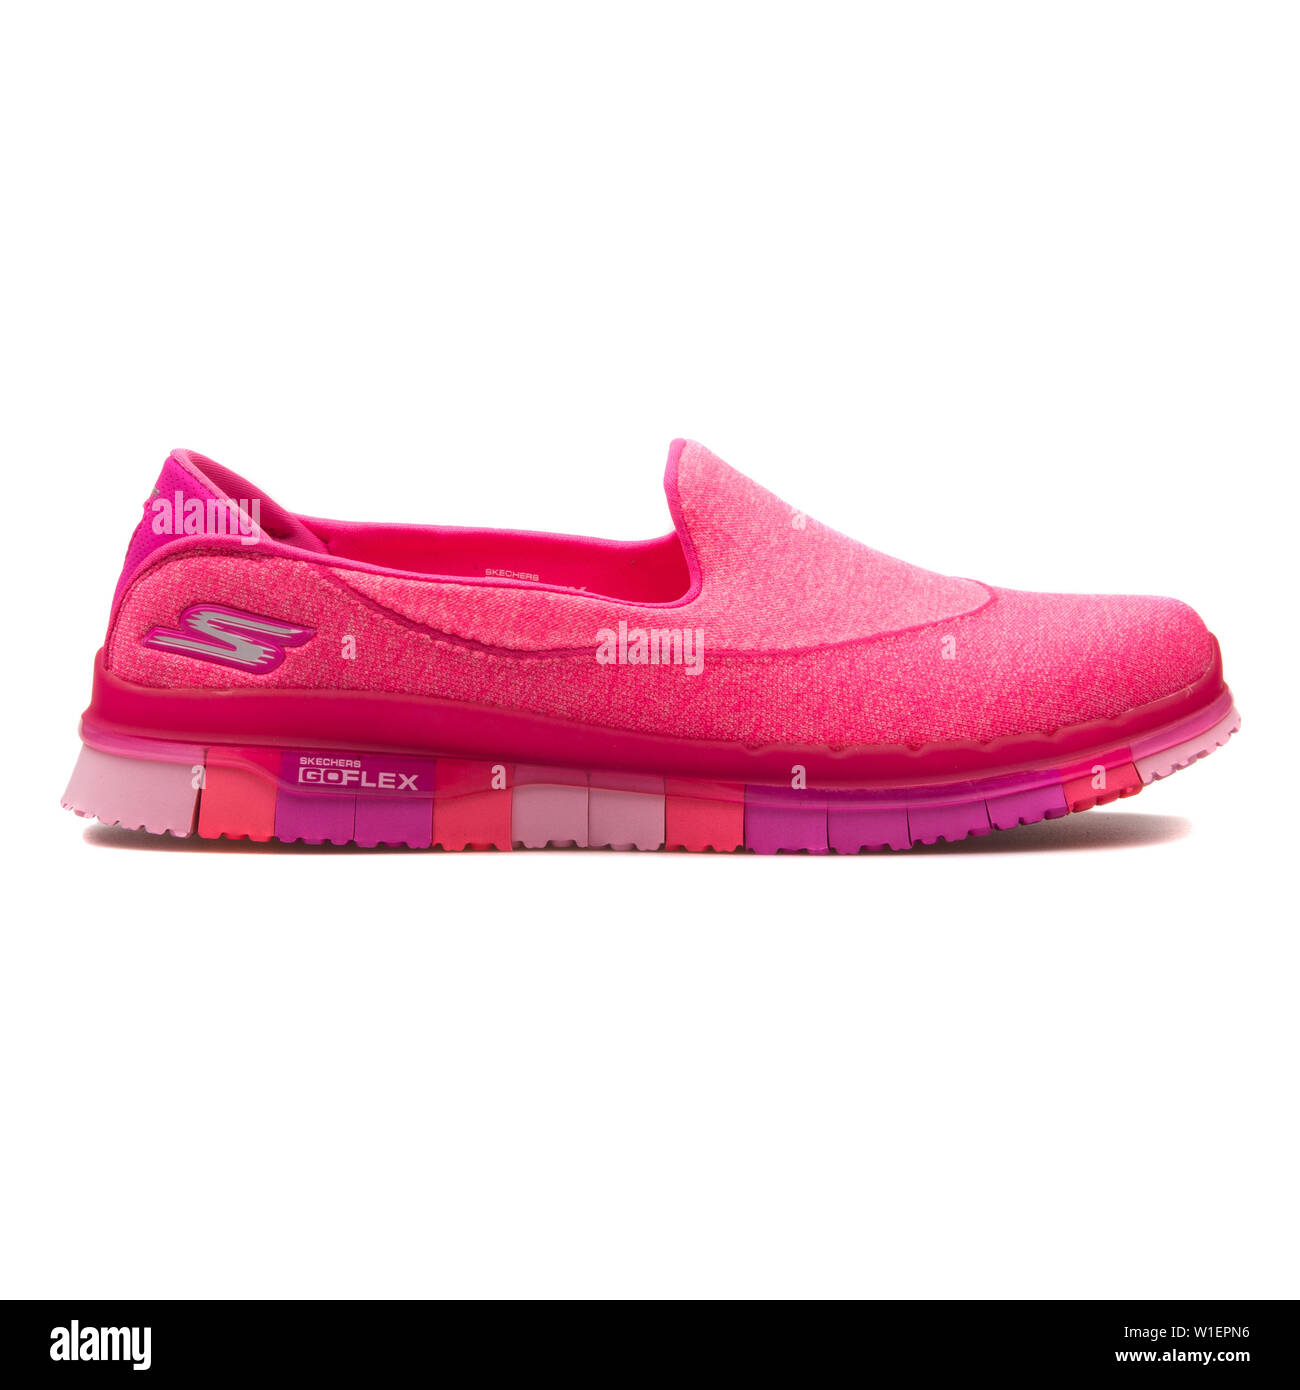 2017: Skechers Go Flex hot pink sneaker 